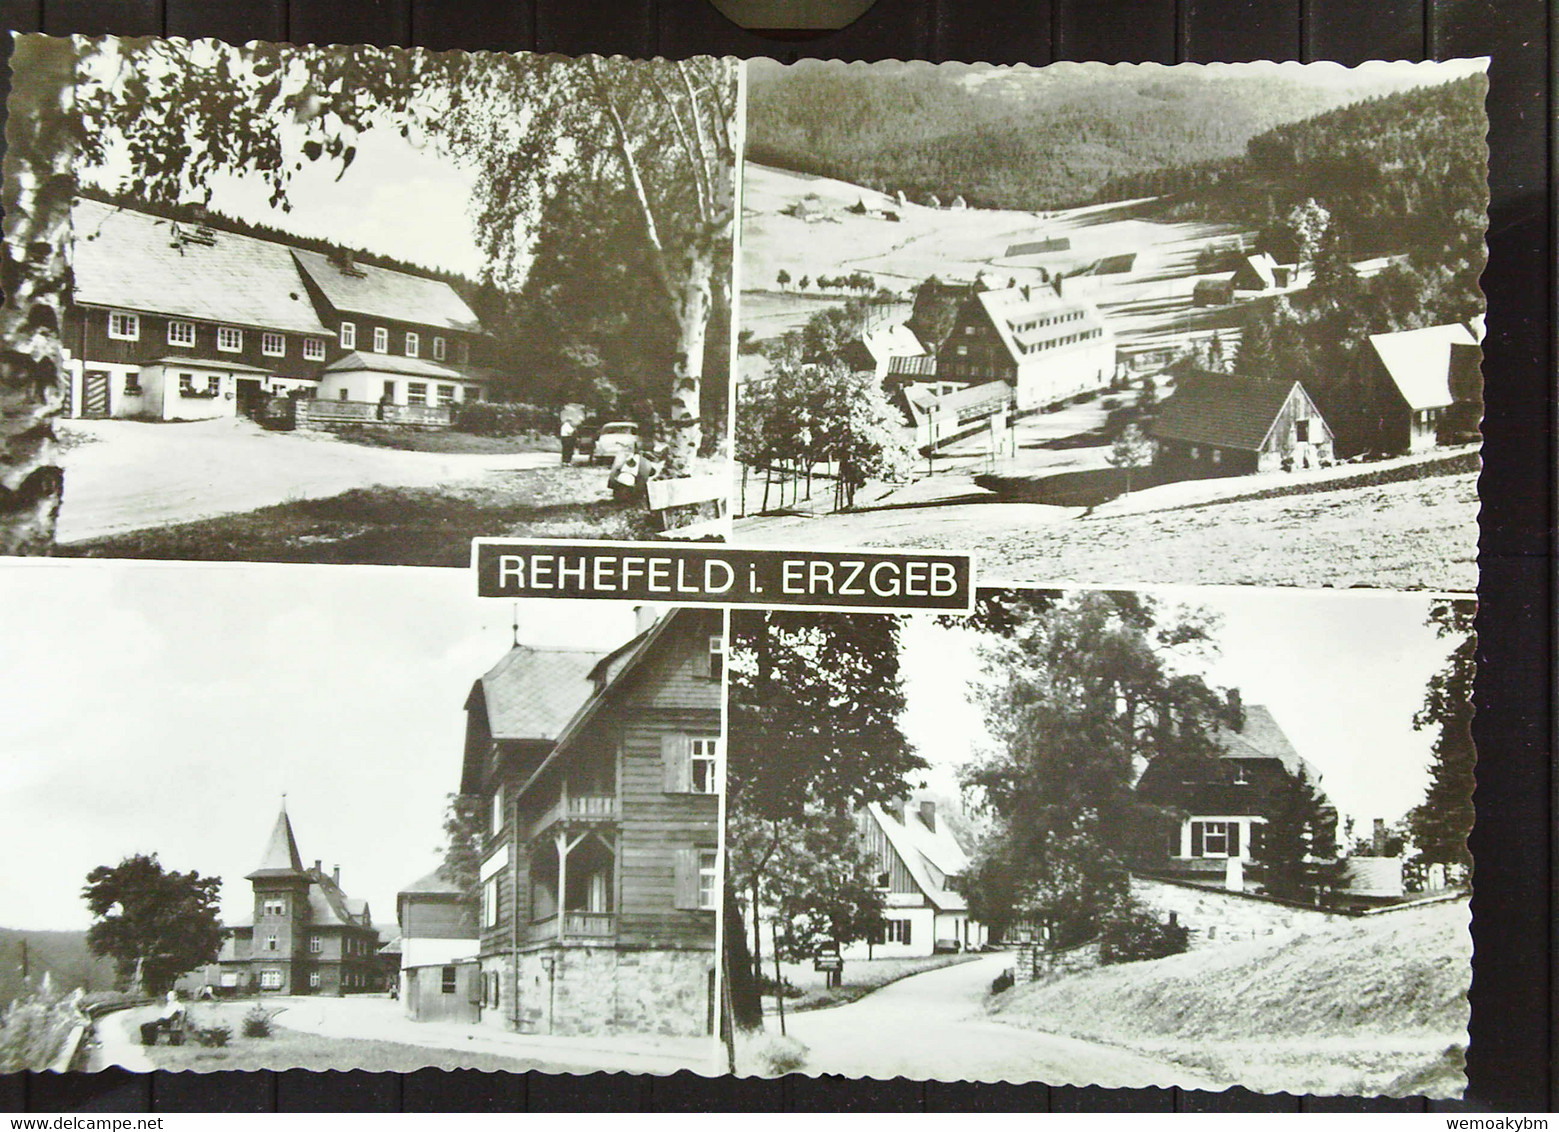 Ansichtskarte Von Rehefeld (Erzgeb.) Mit 4 Ansichten Um 1965 - Rehefeld